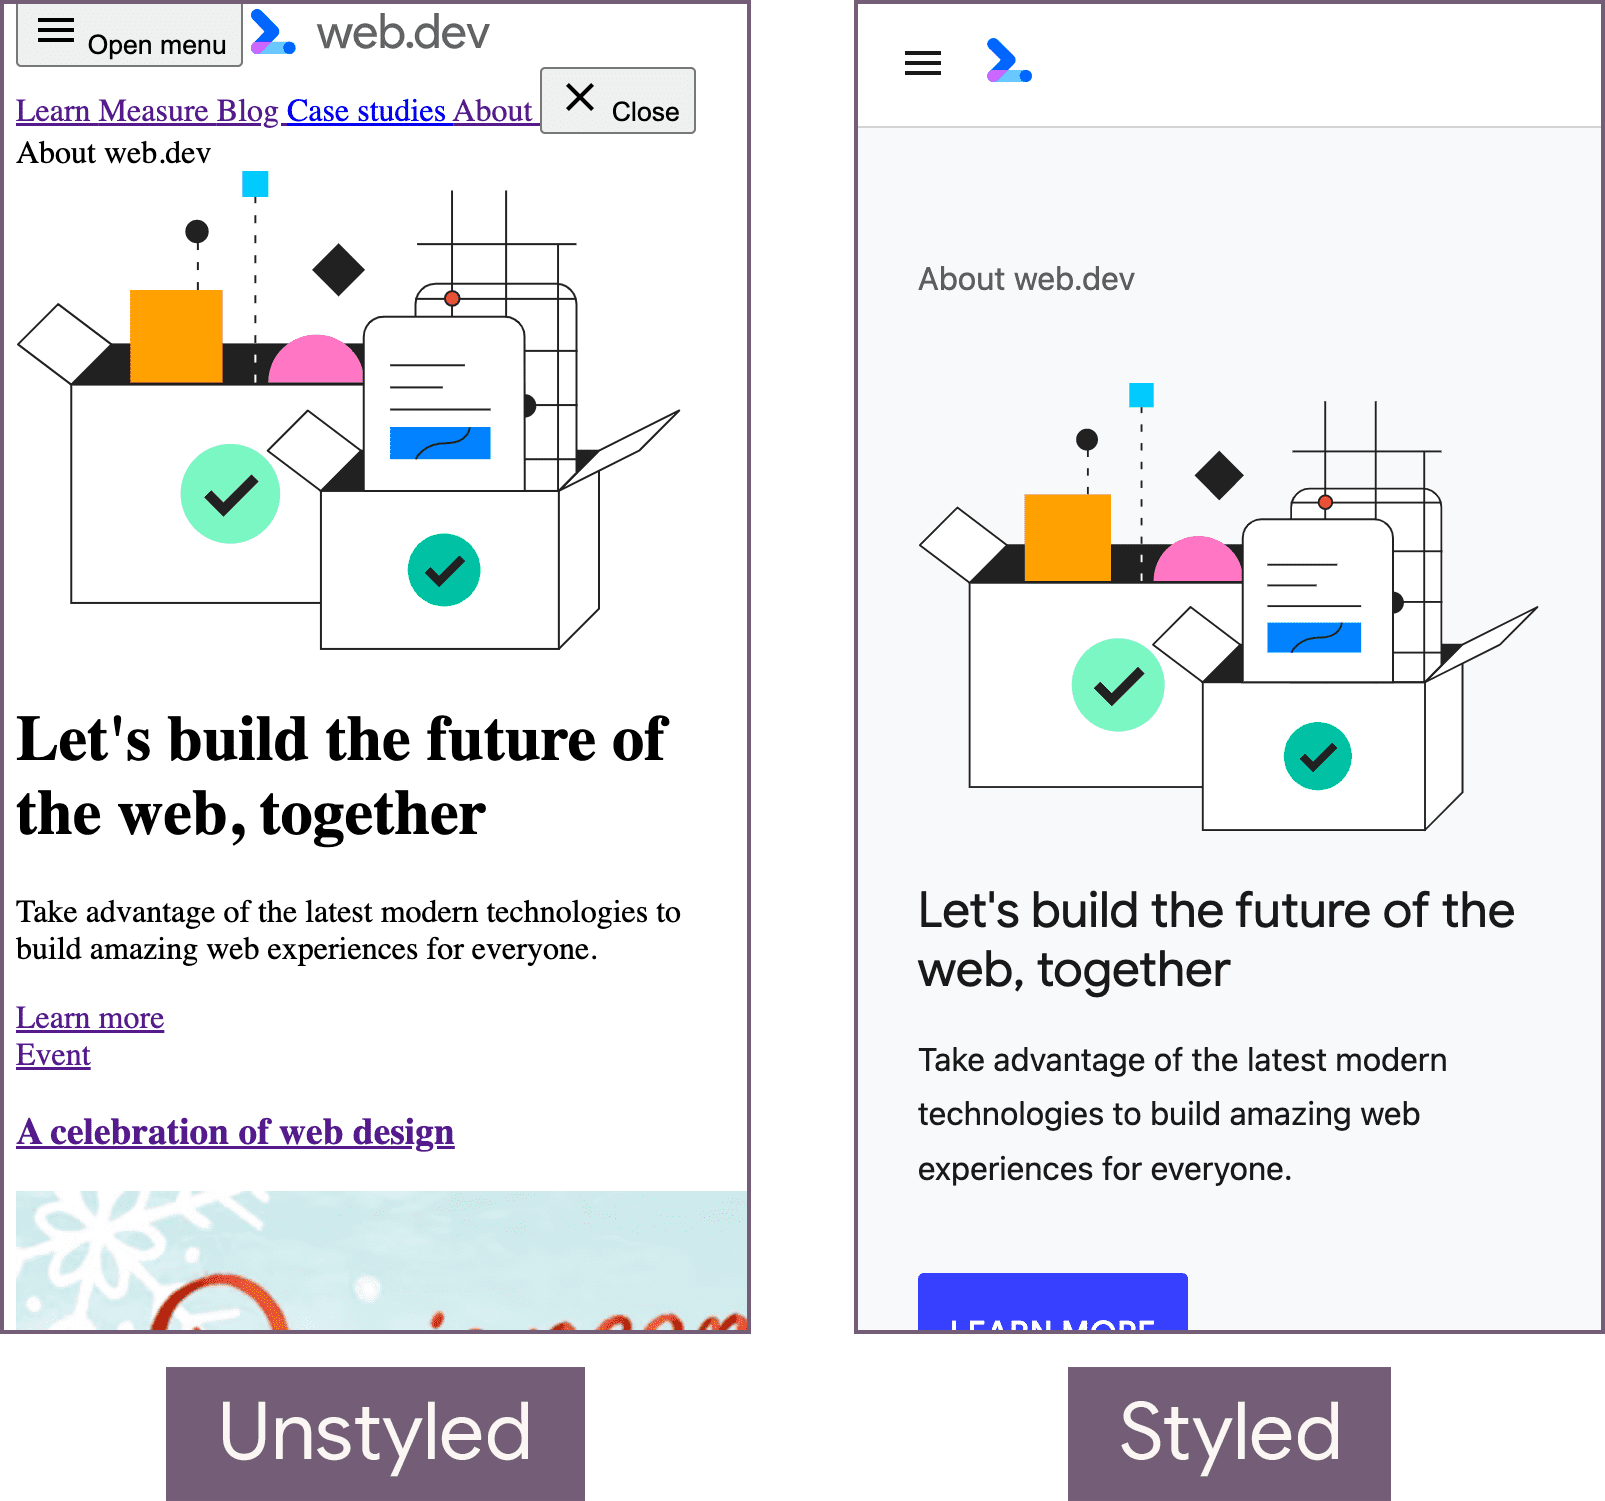 Strona główna web.dev bez stylu (po lewej) ze stylem (po prawej).